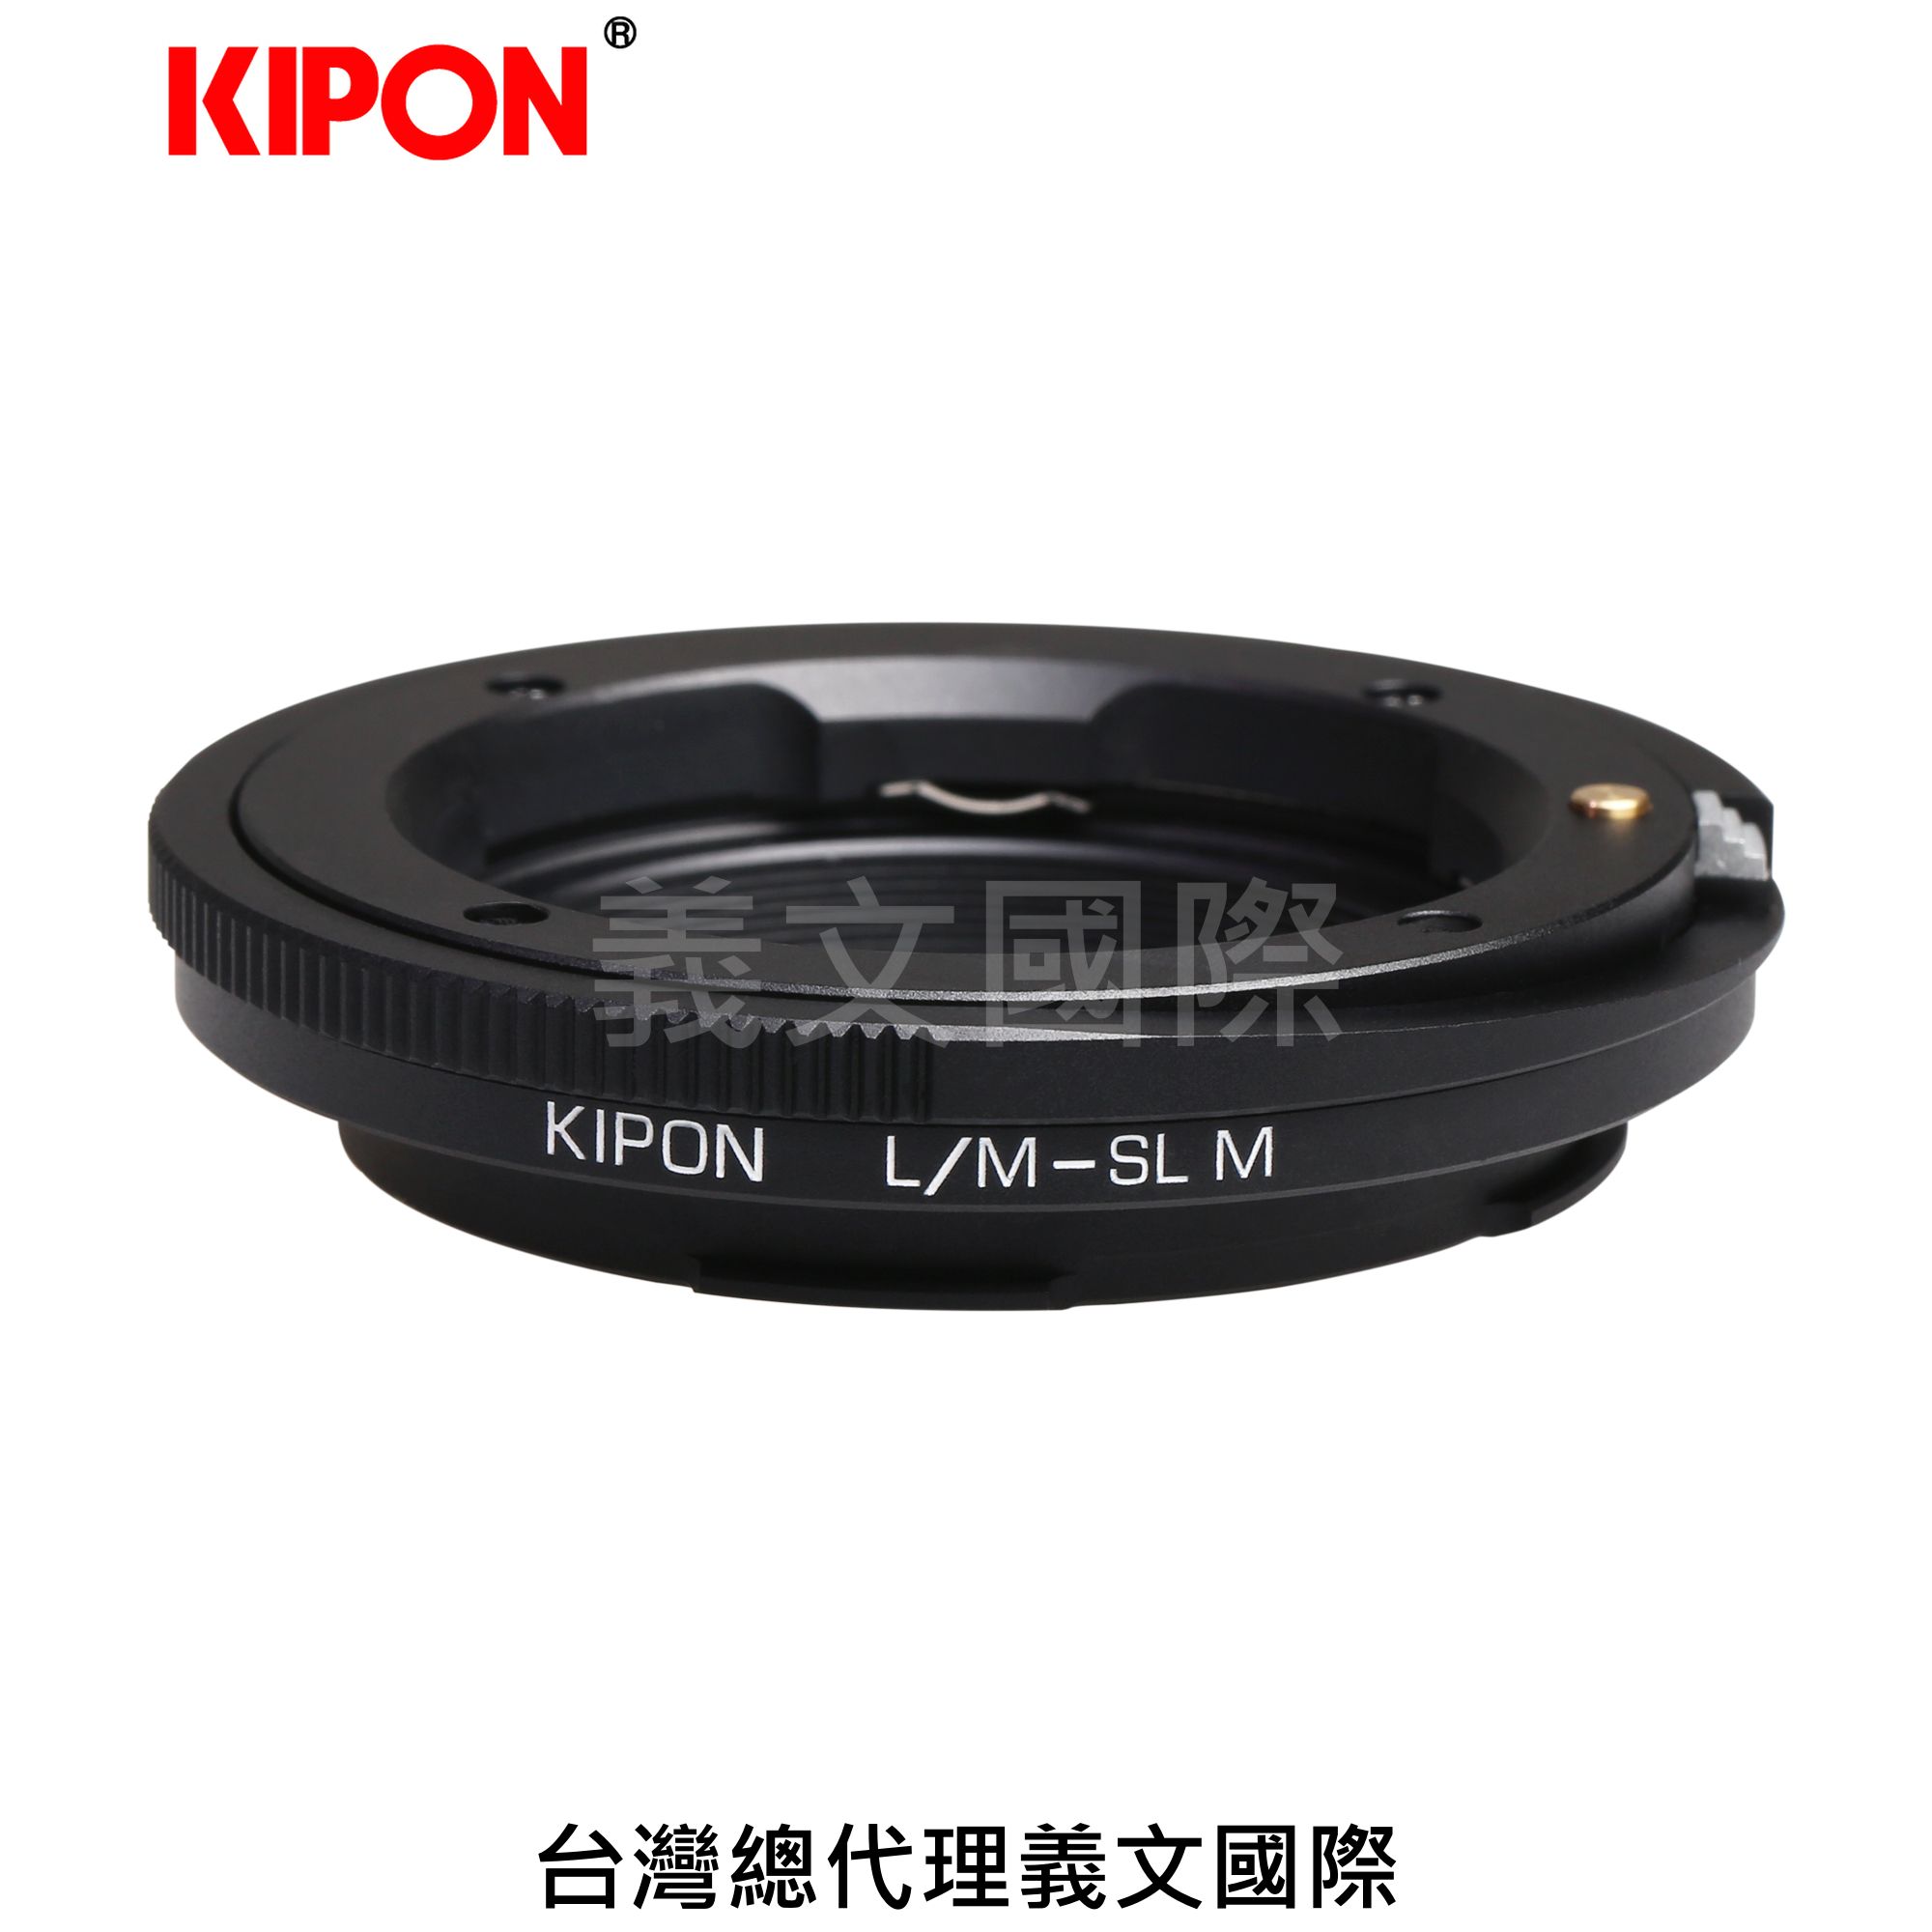 Kipon轉接環專賣店:L/M-L M//with helicoid(Leica SL,徠卡,Leica M,L/M,LM,微距,S1,S1R,S1H,TL,TL2,SIGMA FP)